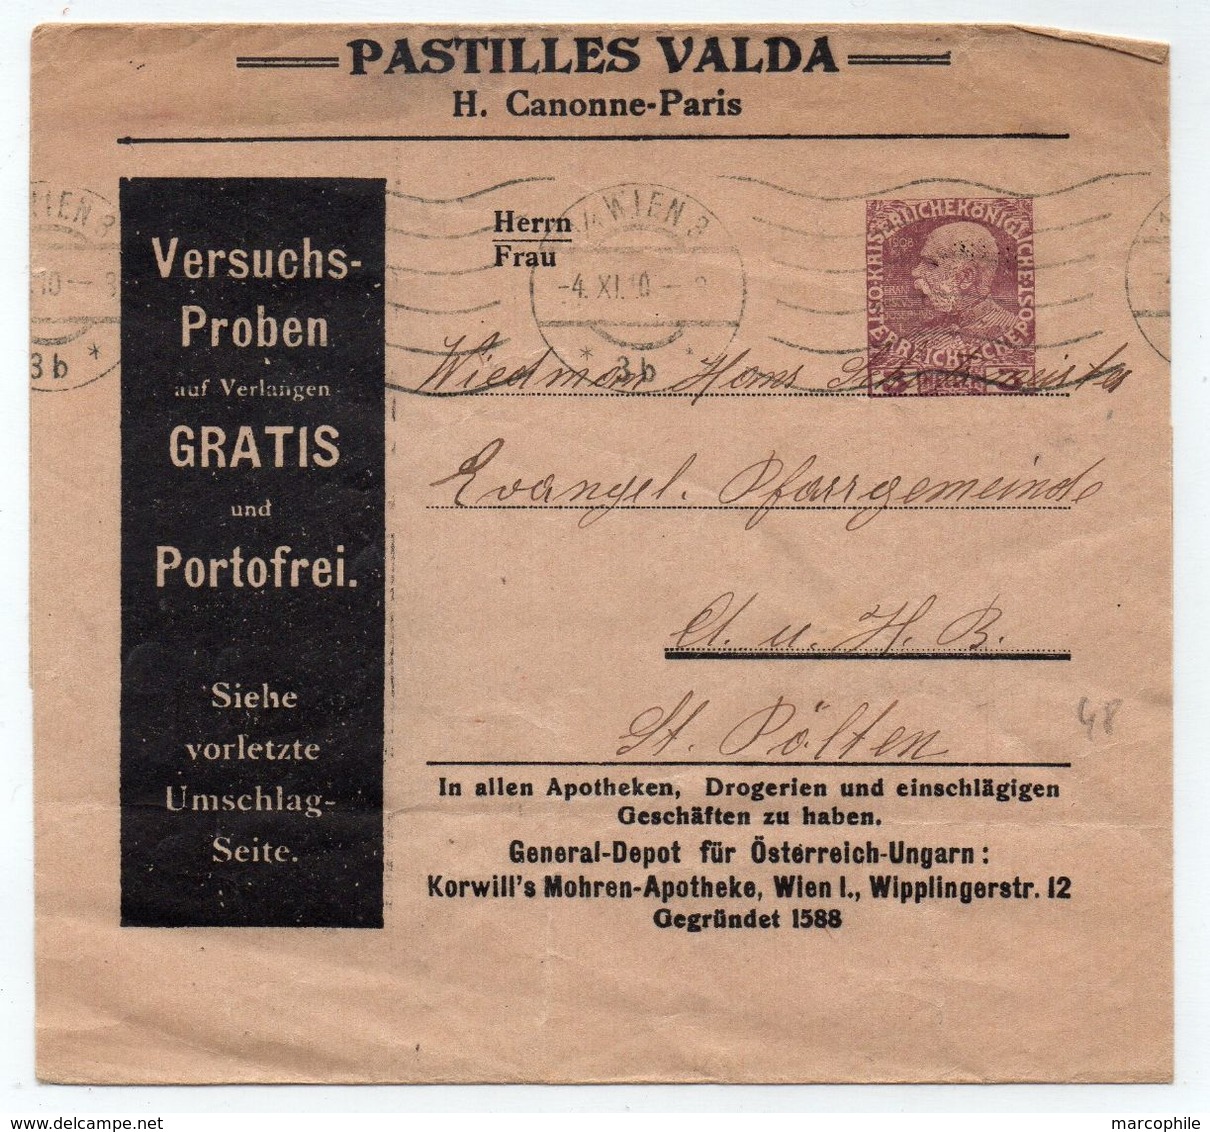 PASTILLES VALDA - MEDICAMENT POUR LA GORGE / 1910 ENTIER POSTAL PRIVE AUTRICHIEN - BANDE JOURNAL (ref 4855) - Pharmacy